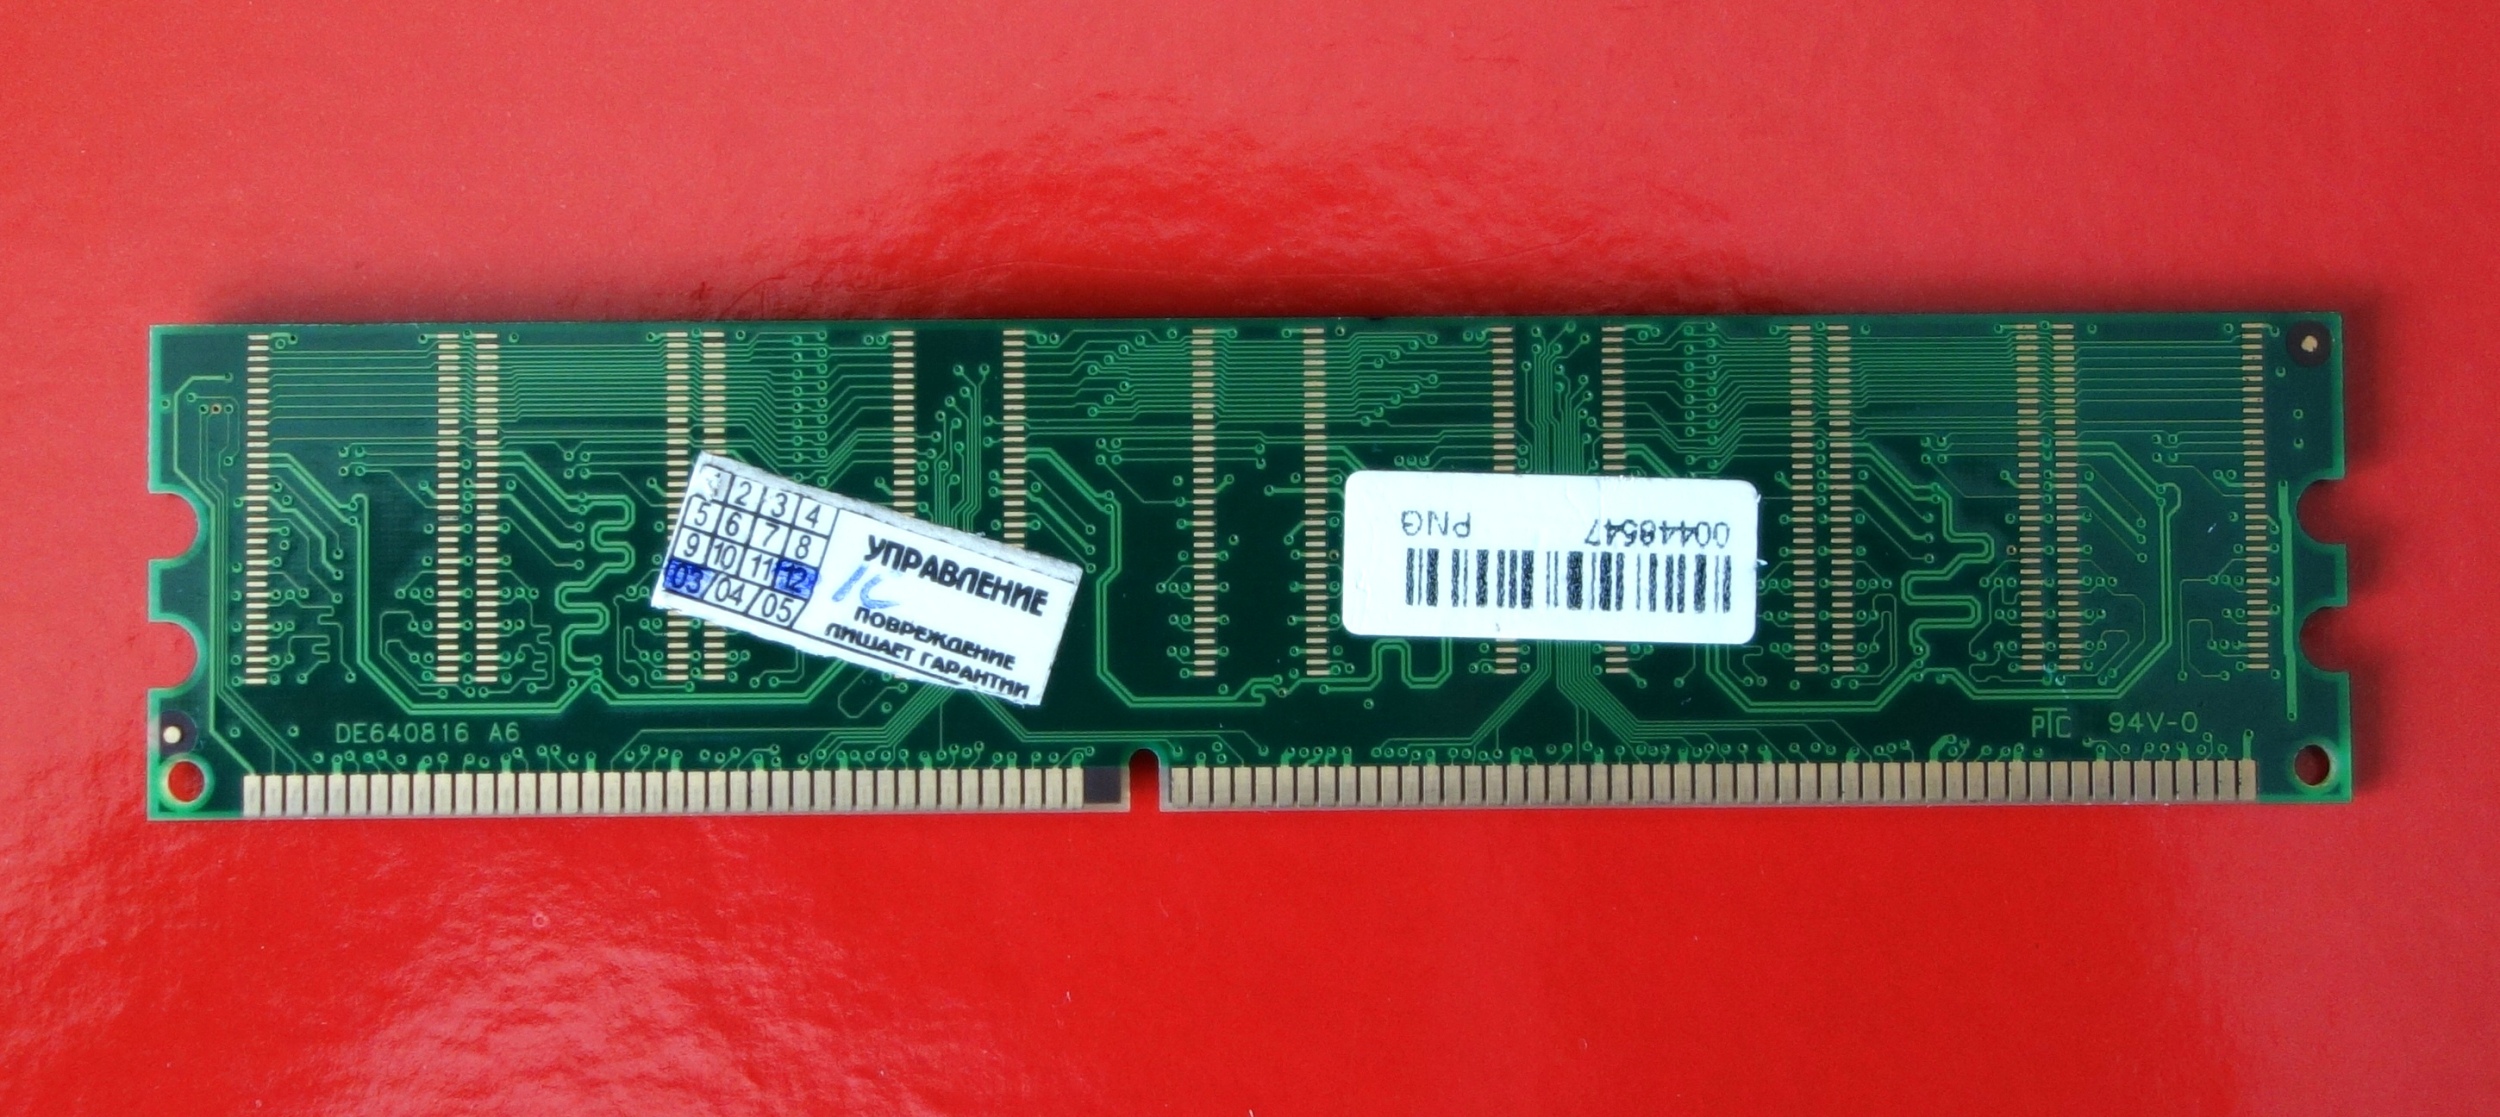 Pc2700 256mb DDR. 4 MB-Flash/63129 KB-DDRA.